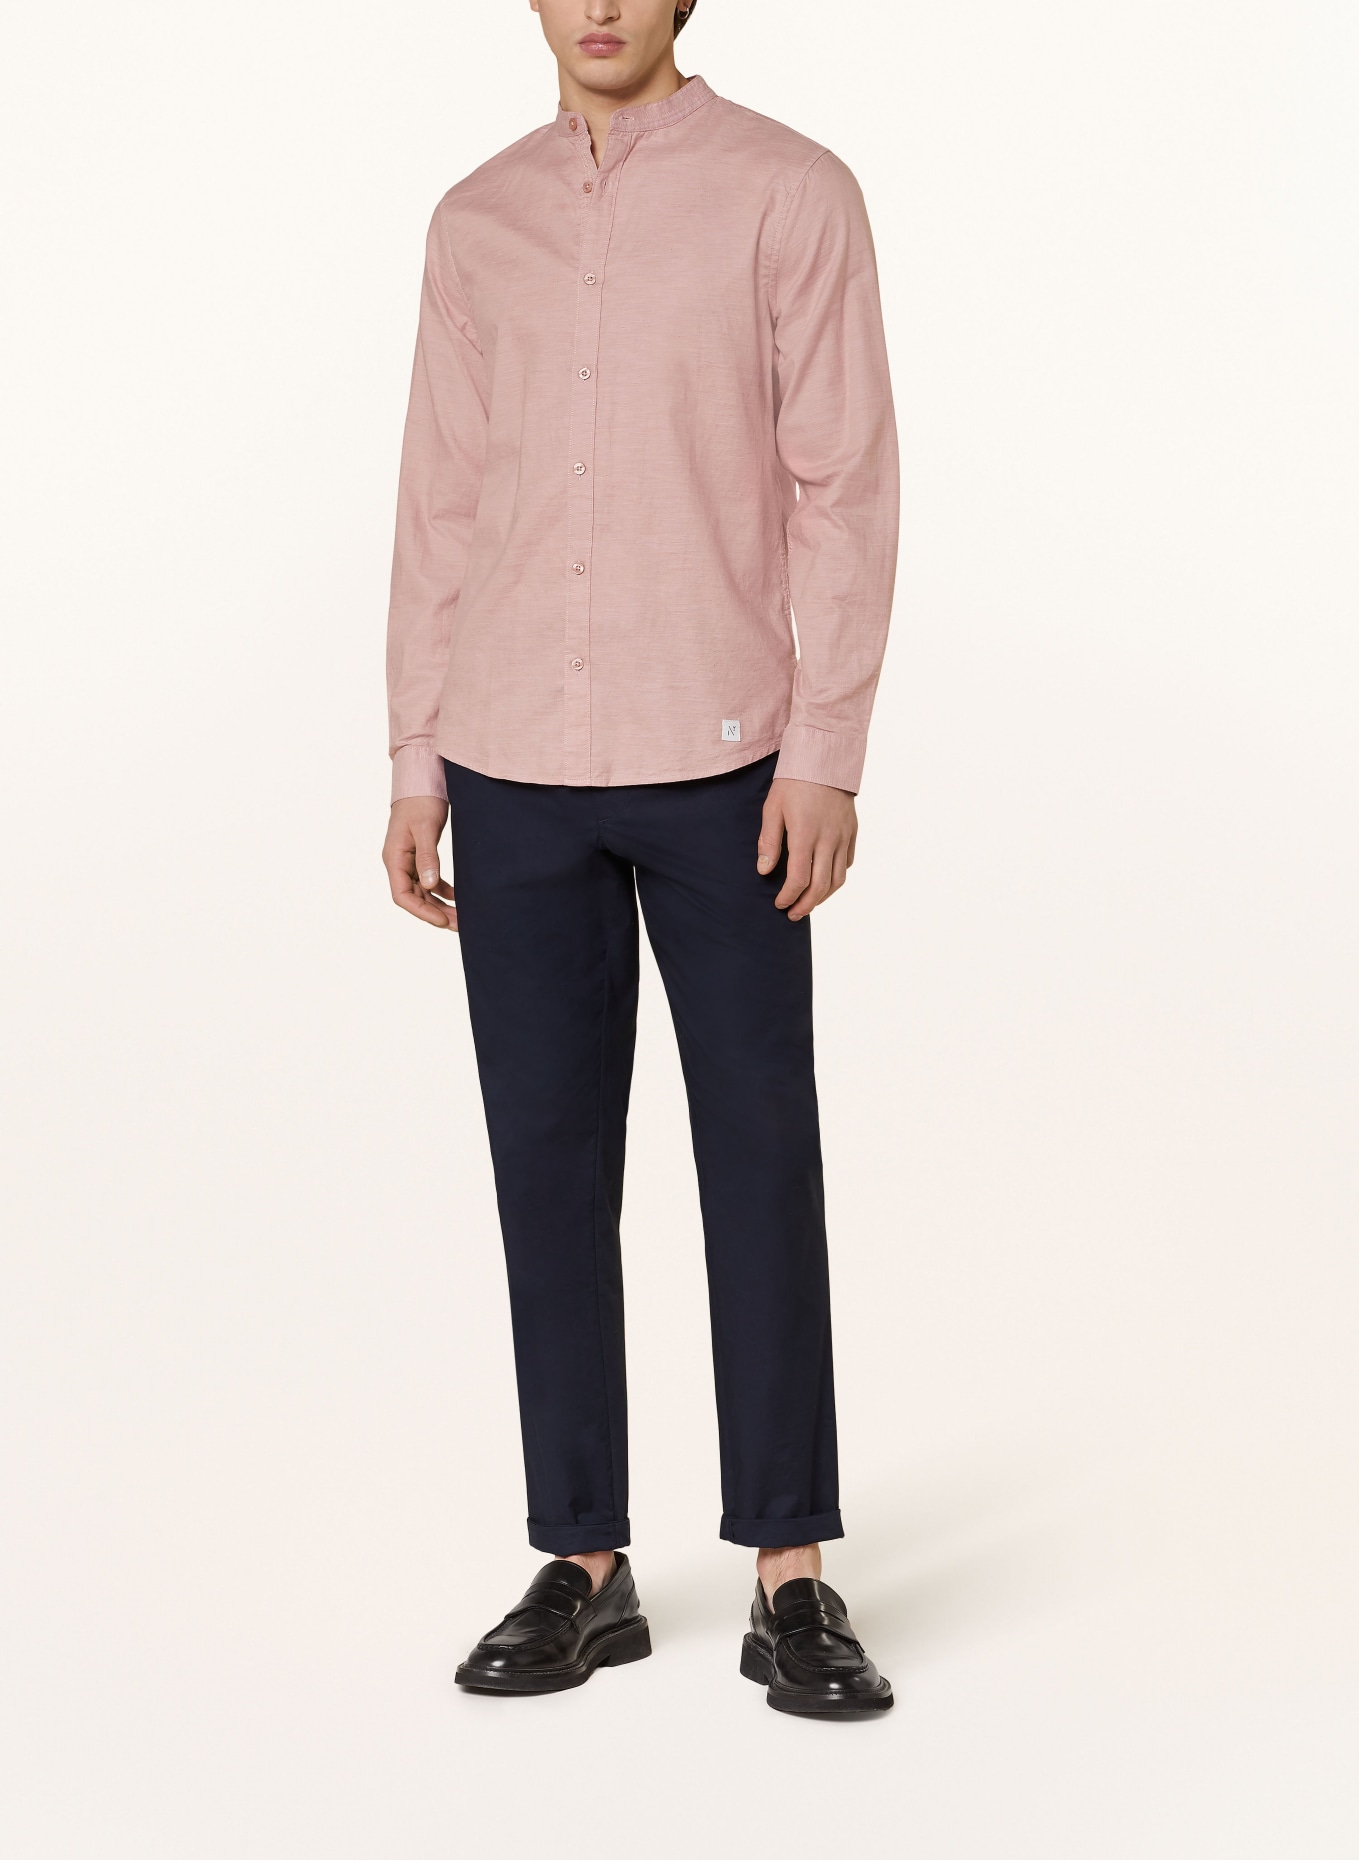 NOWADAYS Oxfordhemd Slim Fit mit Stehkragen, Farbe: ROSÉ (Bild 2)